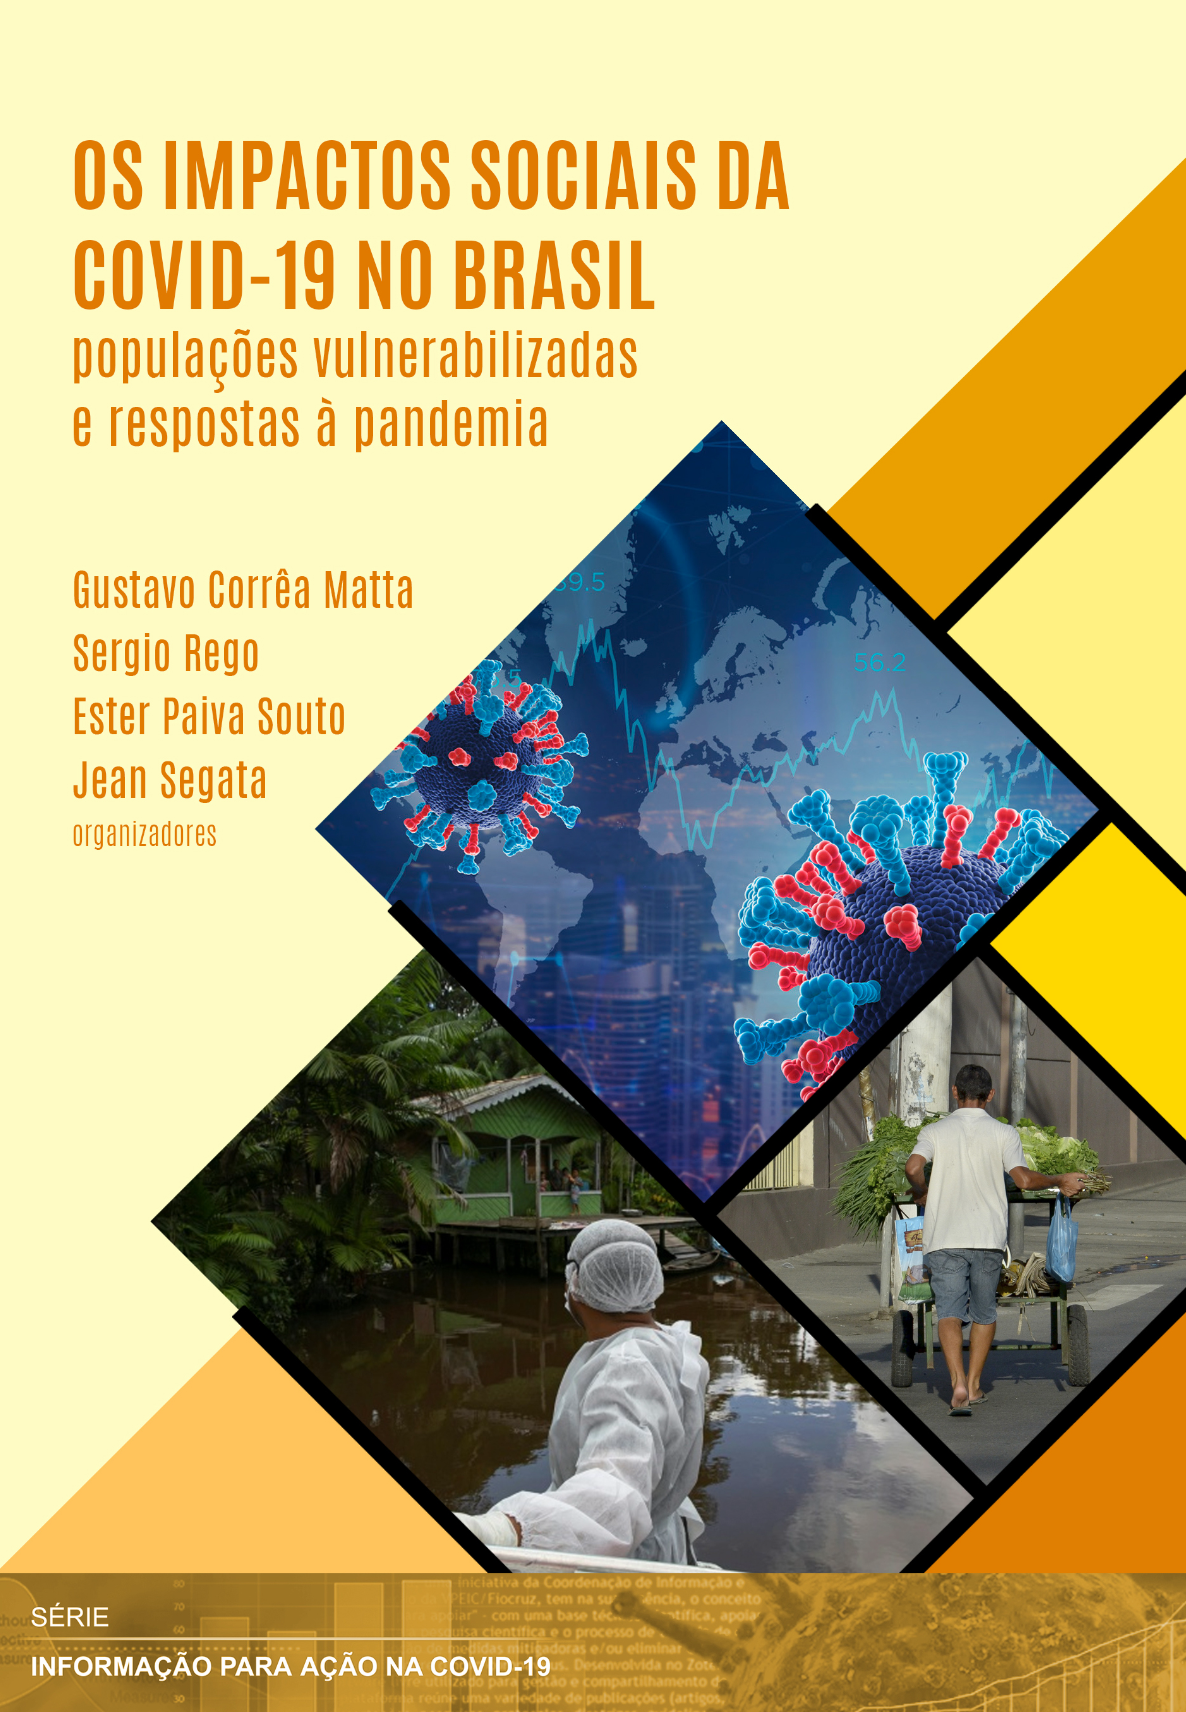 Publication of ebook “Os Impactos Sociais da Covid-19 no Brasil: populações vulnerabilizadas e respostas à pandemia”